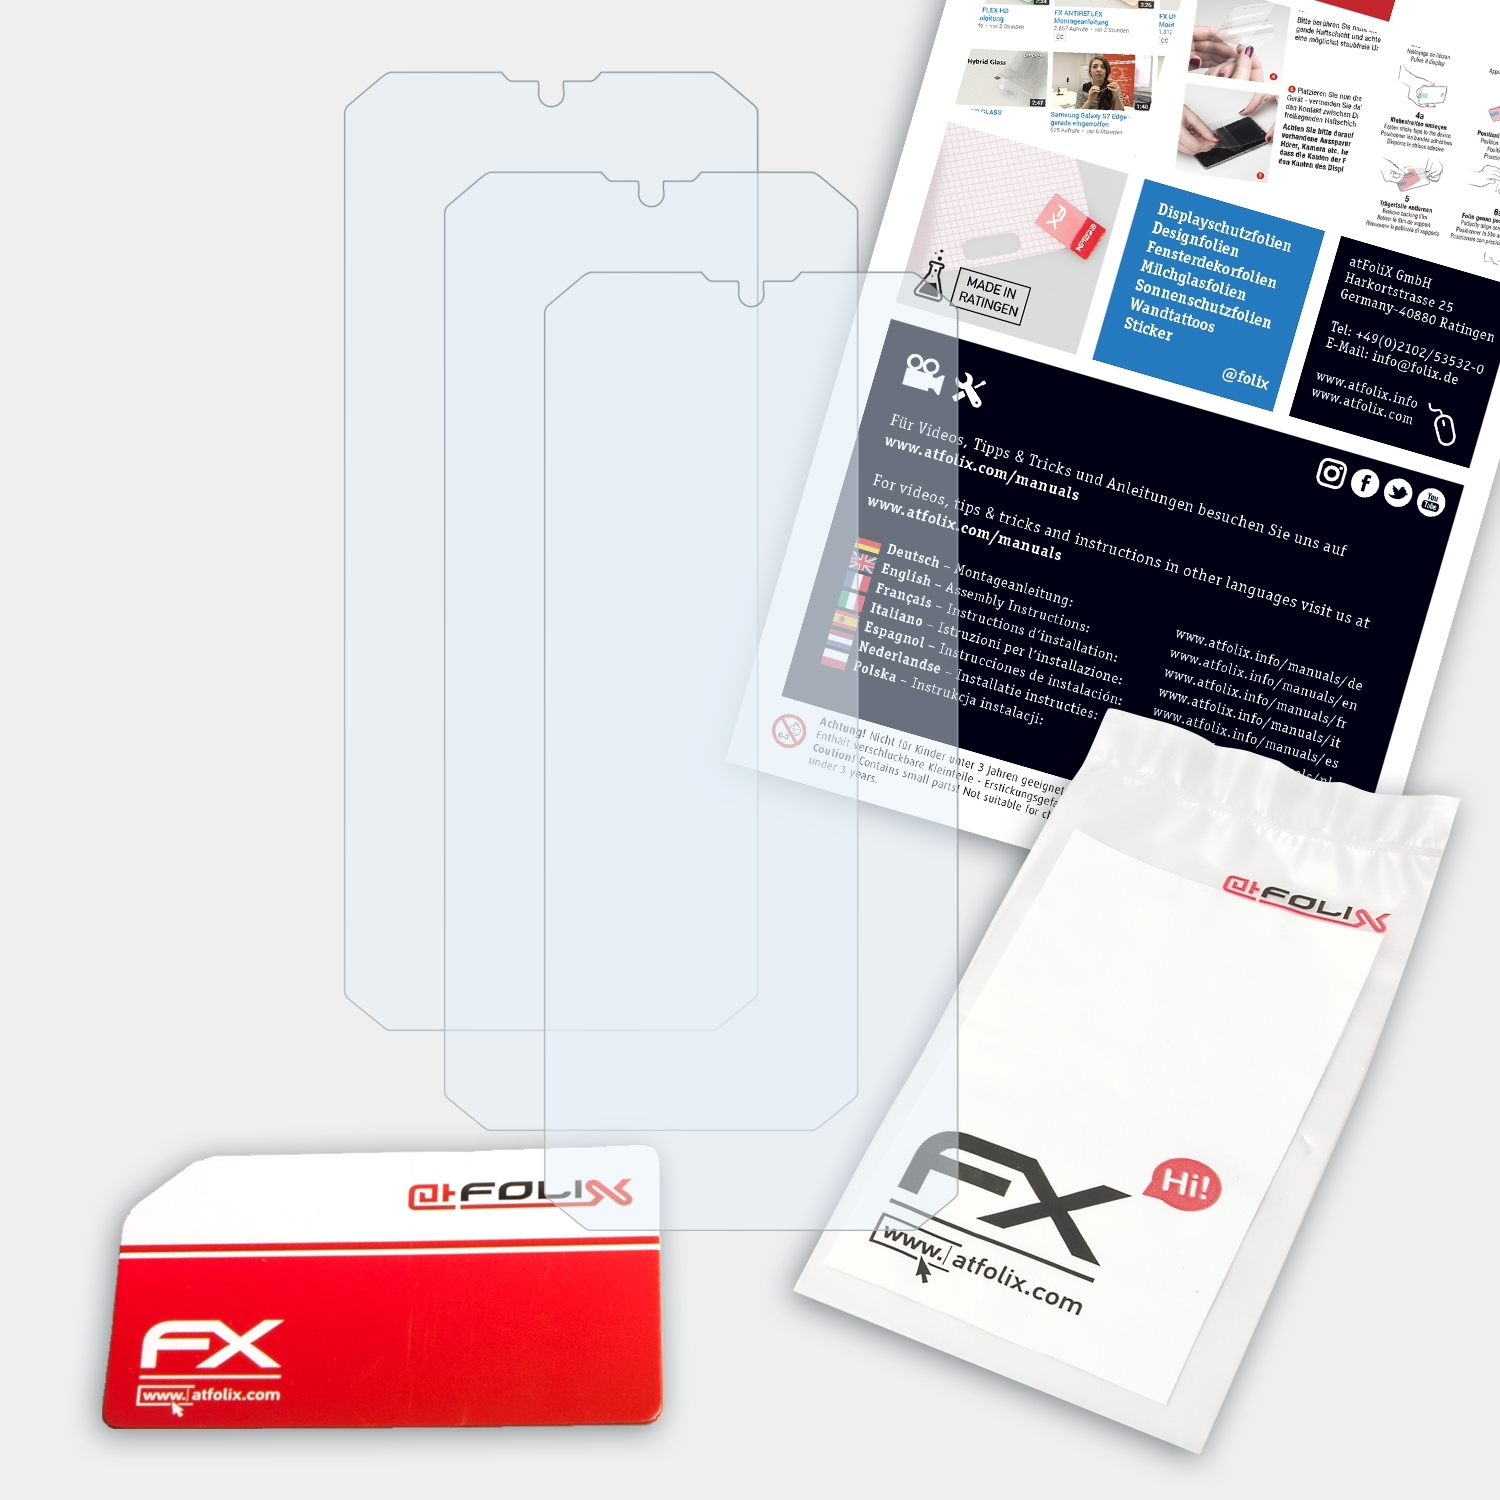 ATFOLIX 3x Displayschutz(für Oukitel Plus) K15 FX-Clear